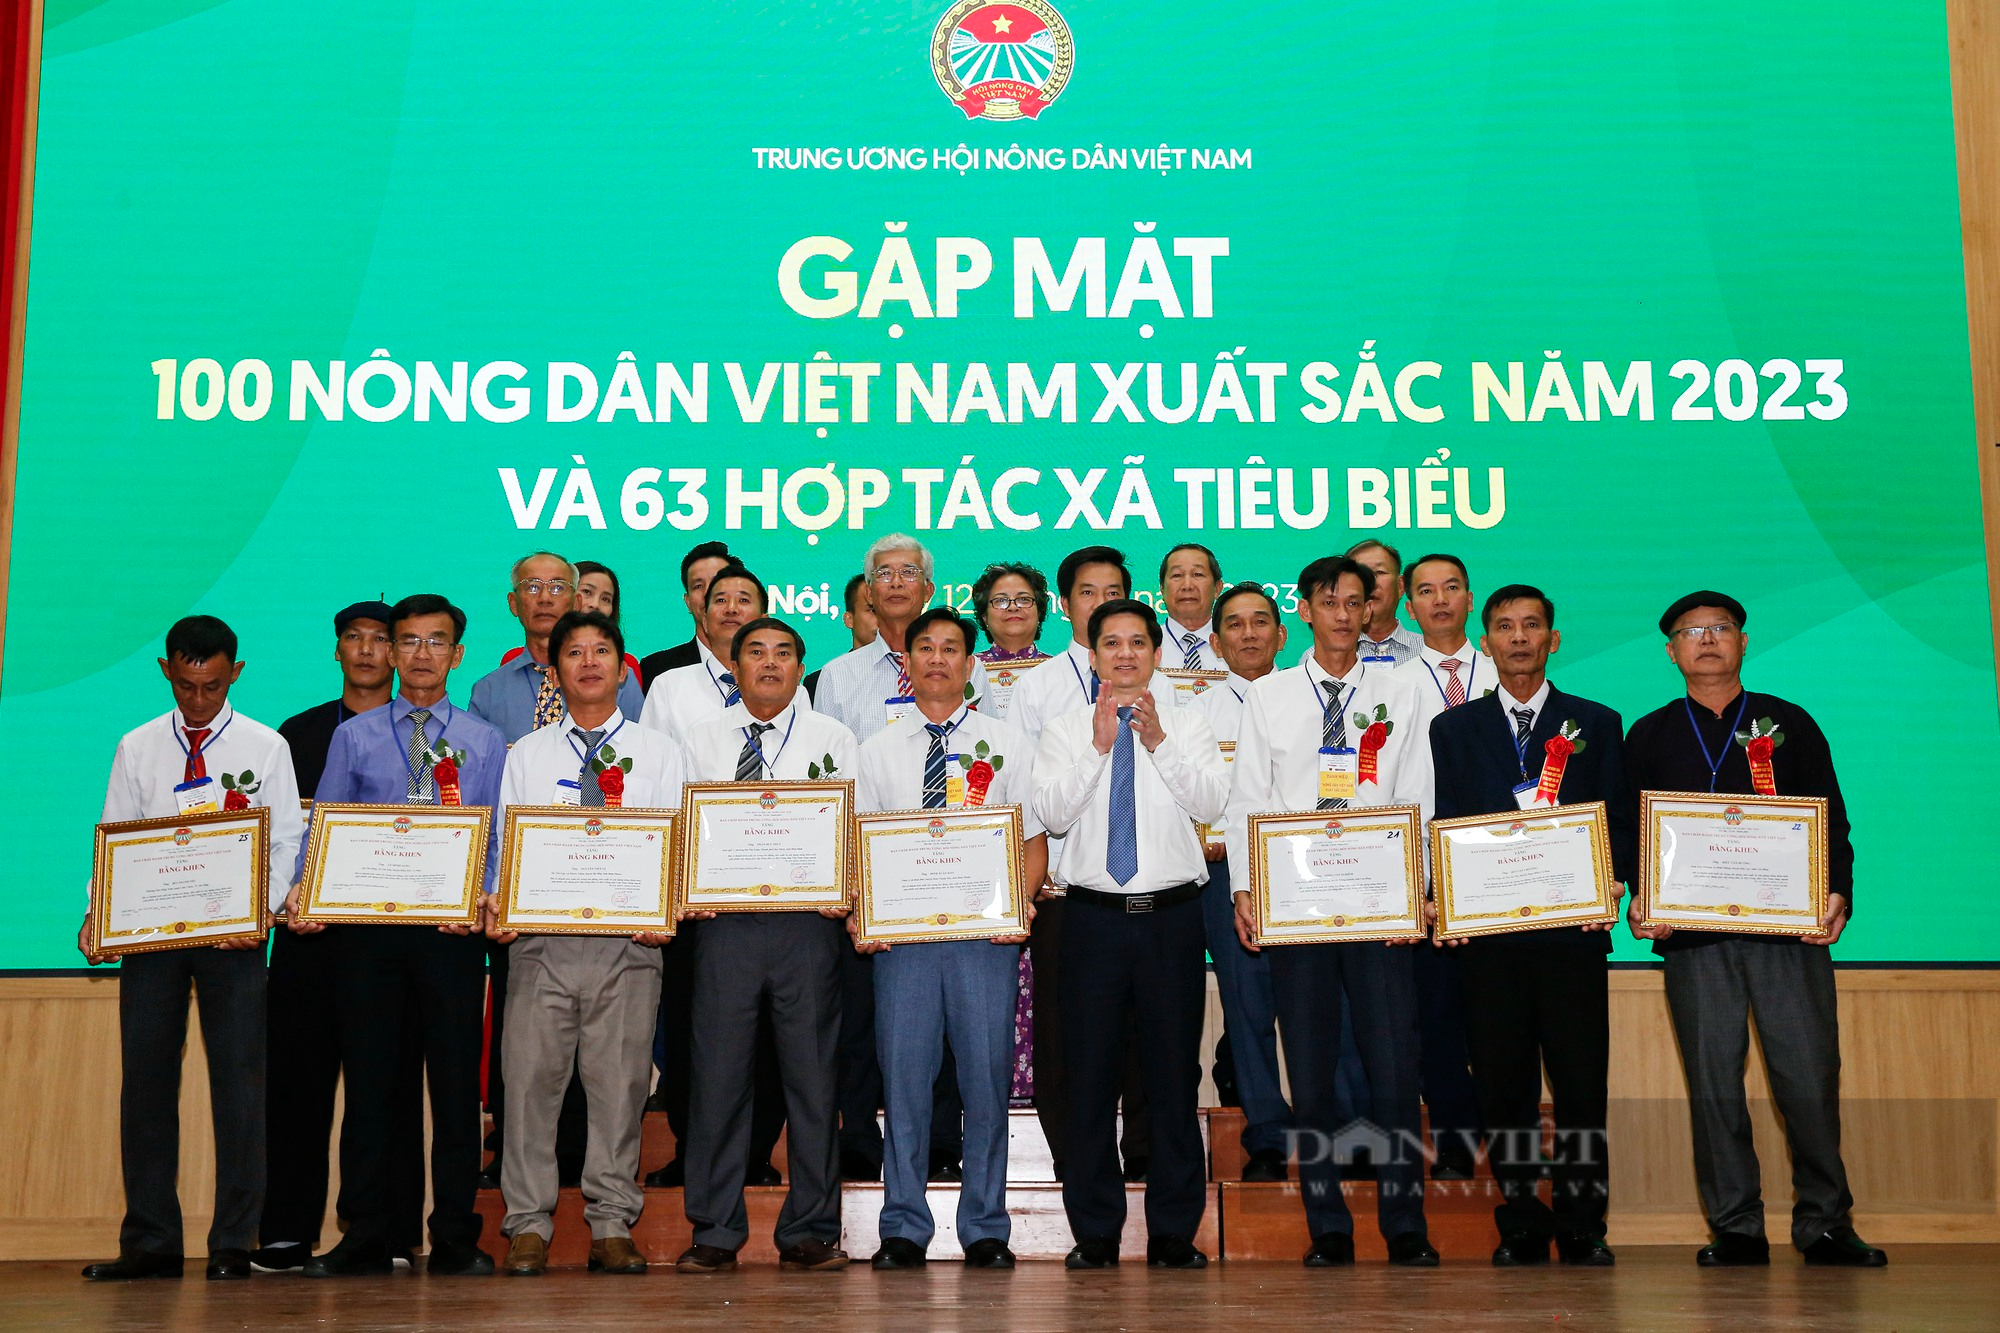 Hình ảnh 163 NDVNXS và HTX tiêu biểu 2023 nhận bằng khen từ Trung ương Hội nông dân Việt Nam - Ảnh 8.